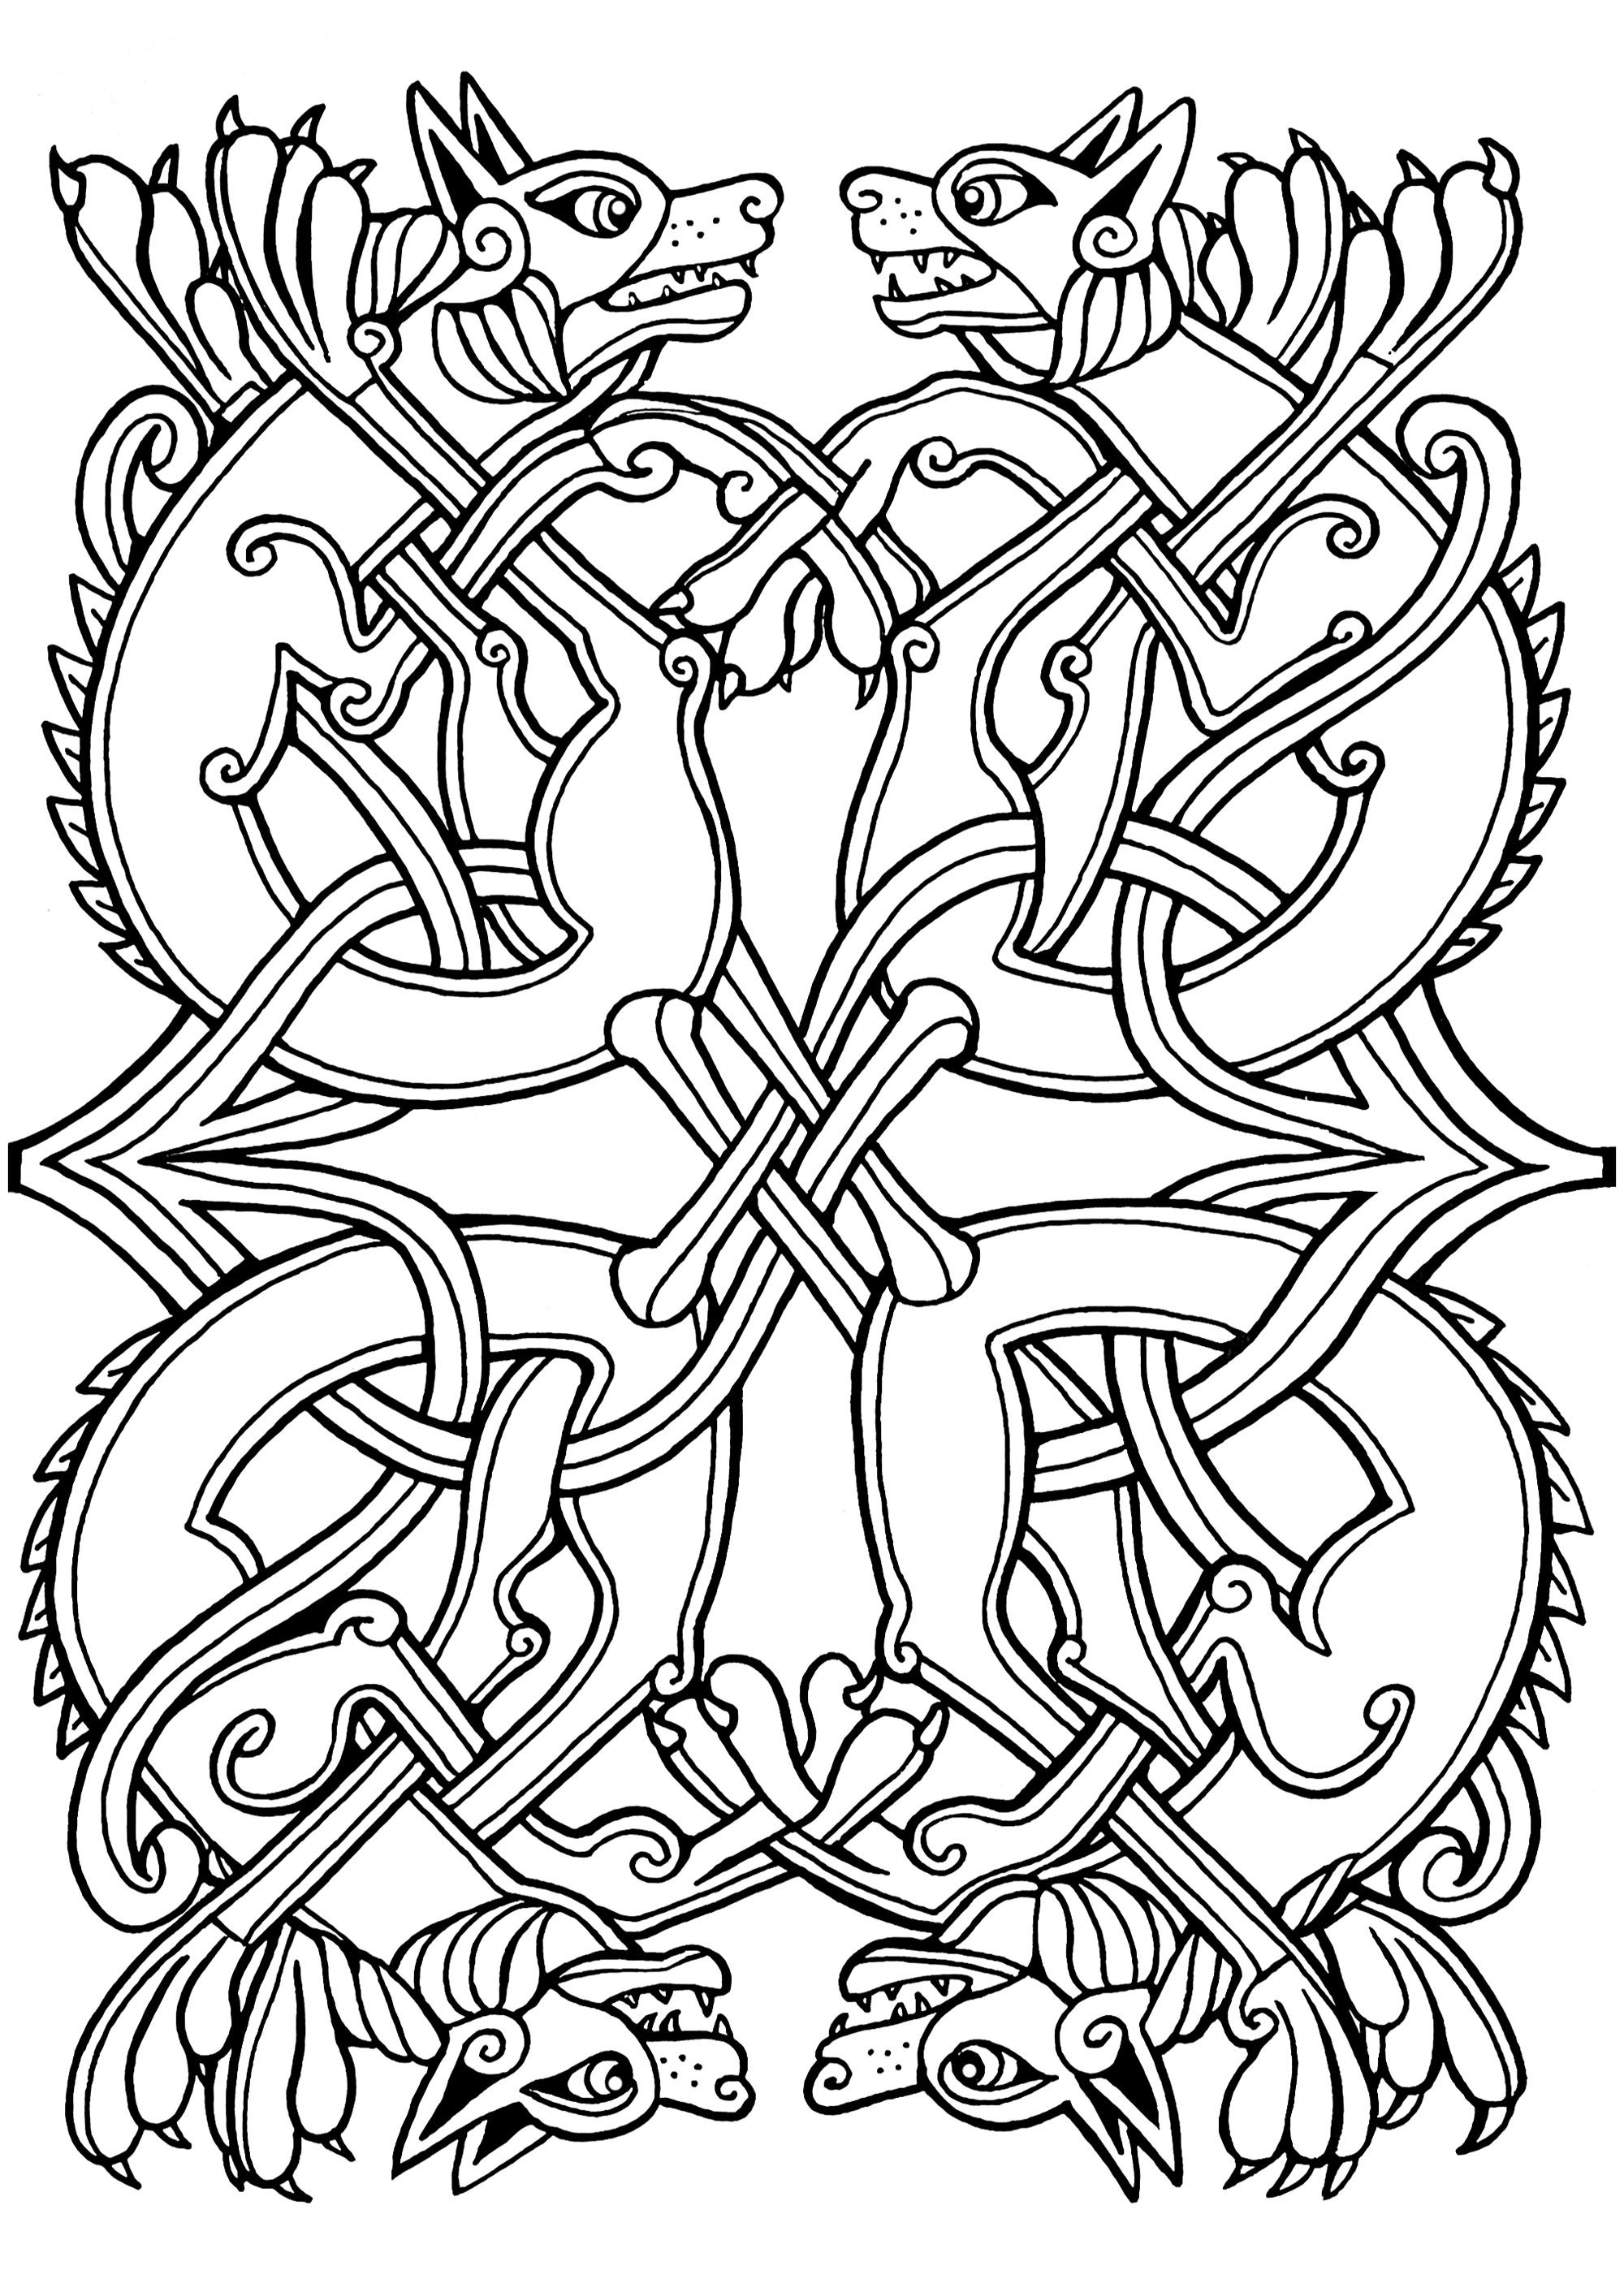 Dibujo celta de perros con motivos celtas entrelazados. Esta ilustración se asemeja a las que aparecen en manuscritos medievales como el Libro de Kells.